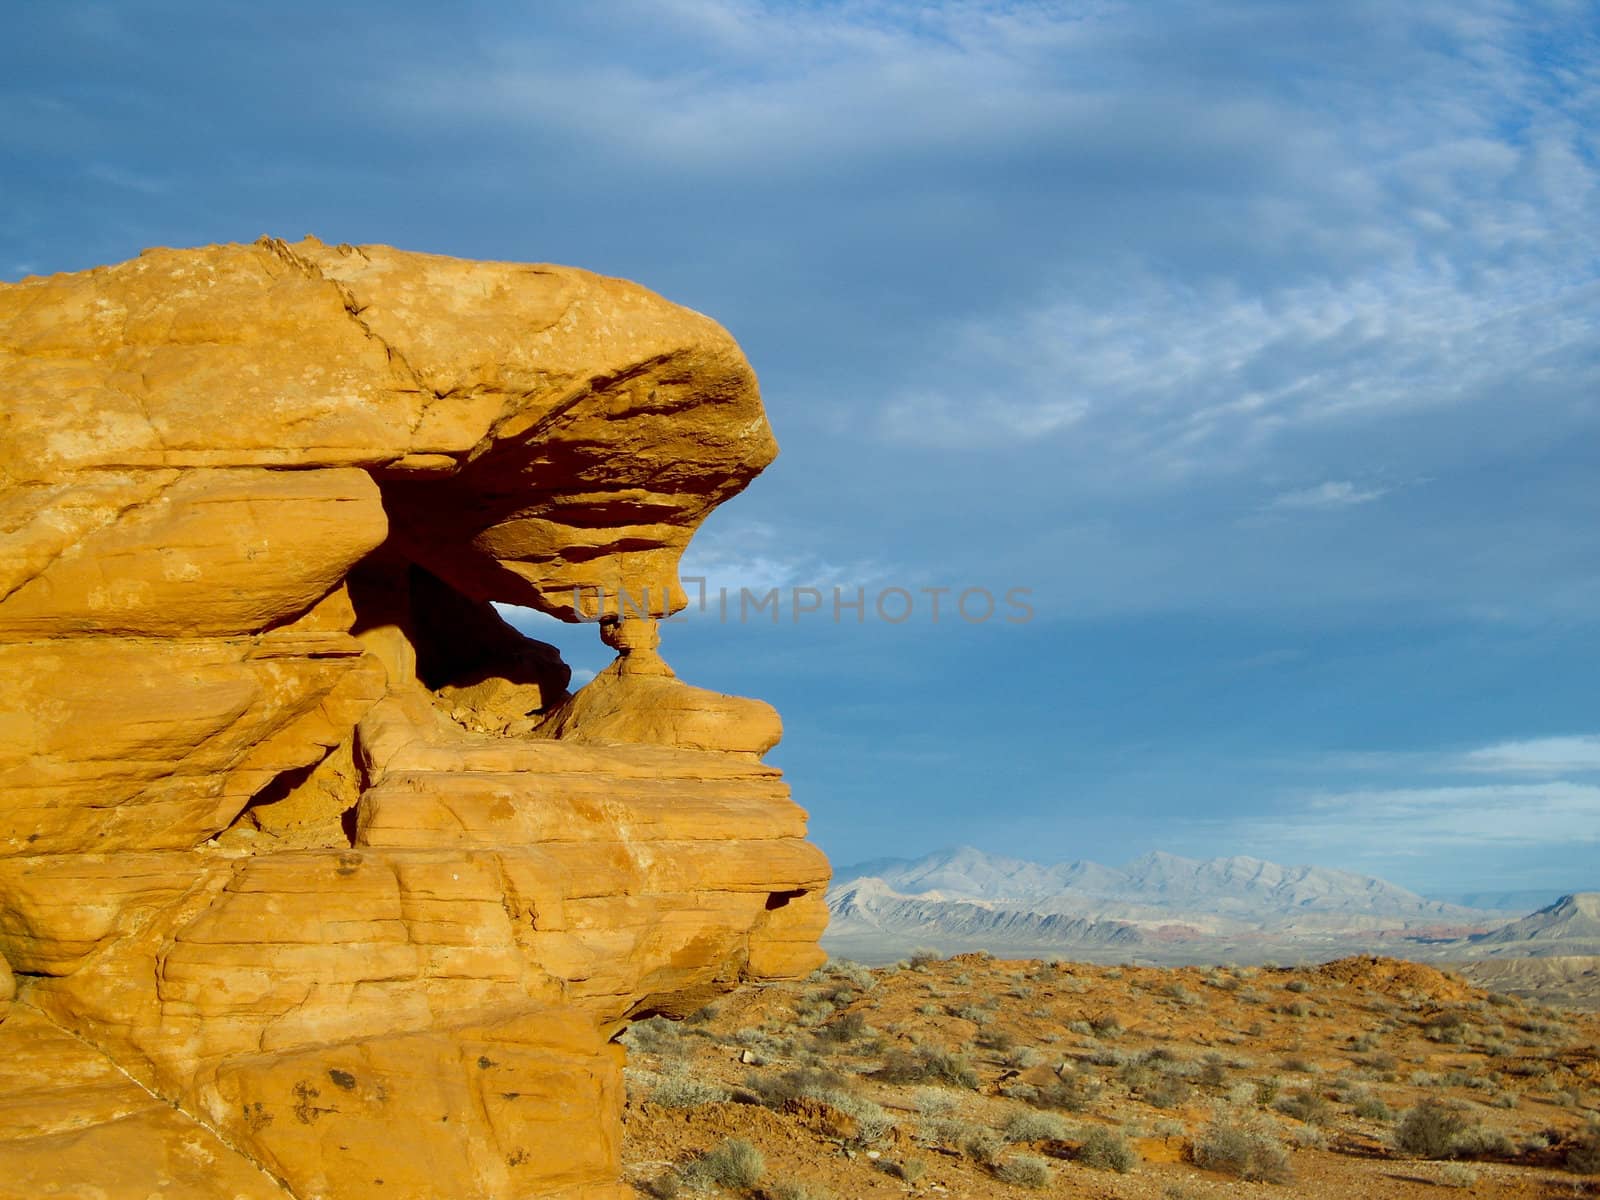 Sandstone formation stands guard over soft desert landscape